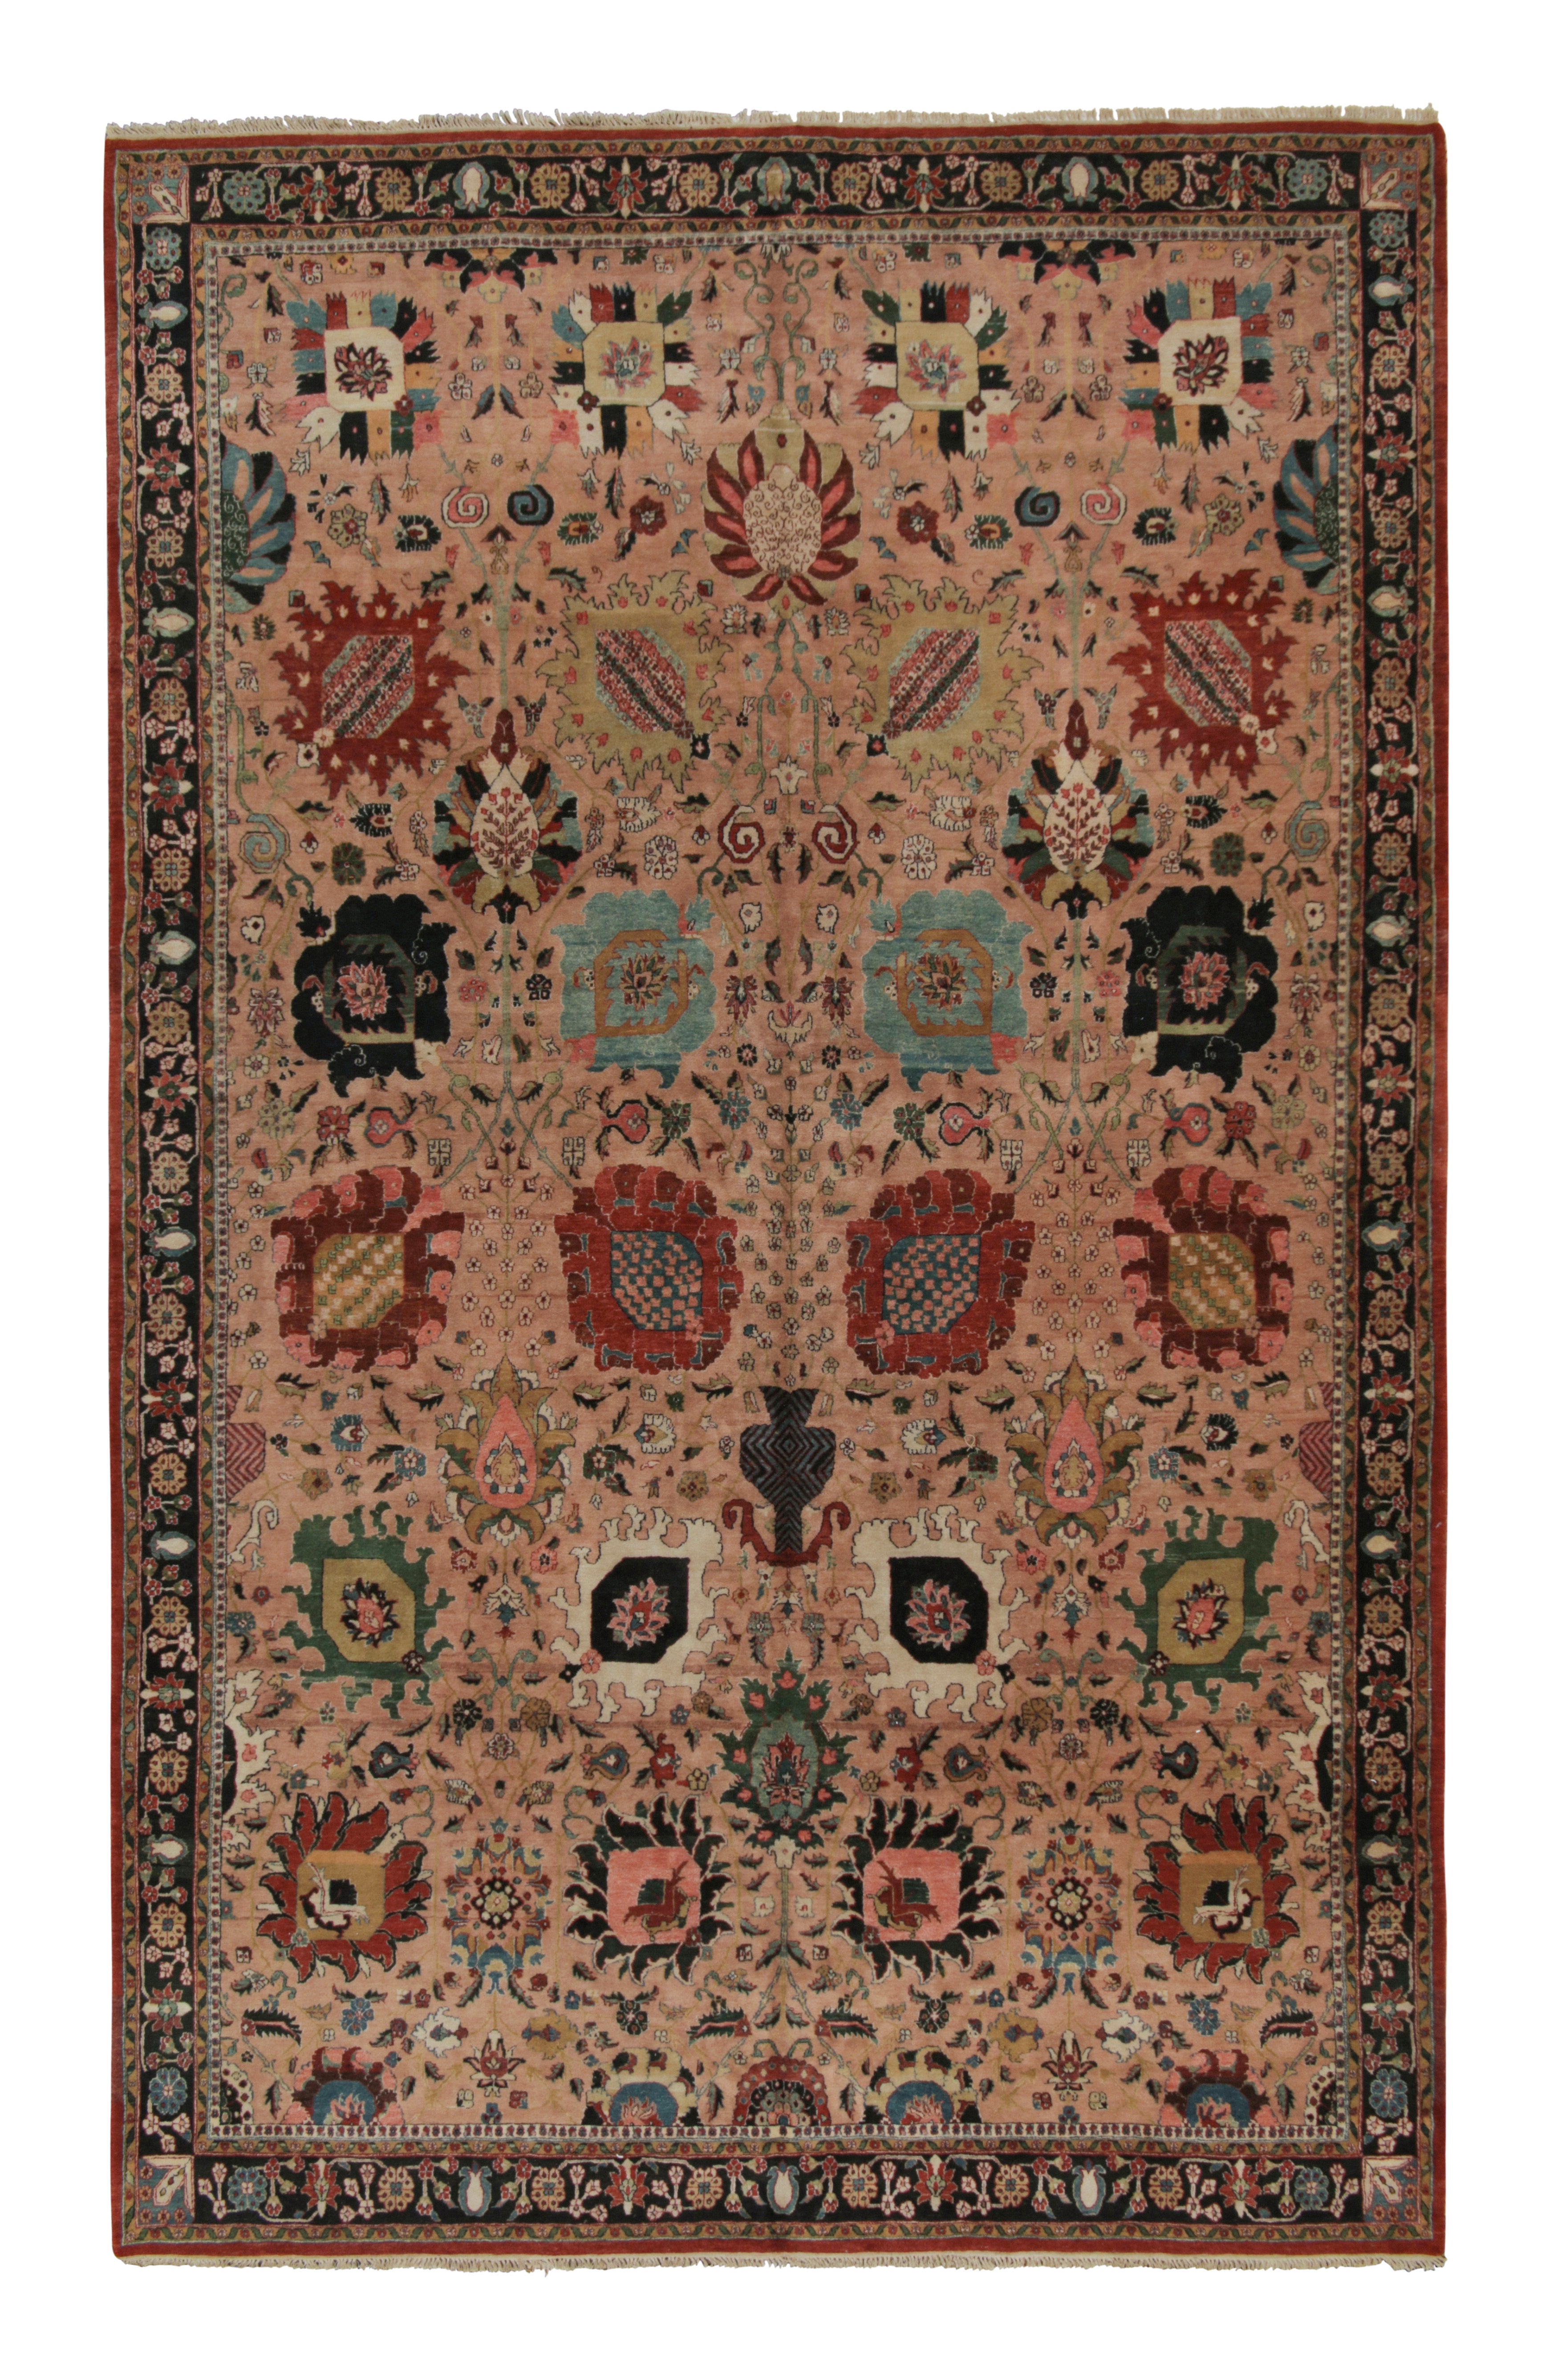 Persischer Teppich von Rug & Kilim in Rosa mit mehrfarbigen Blumenmustern